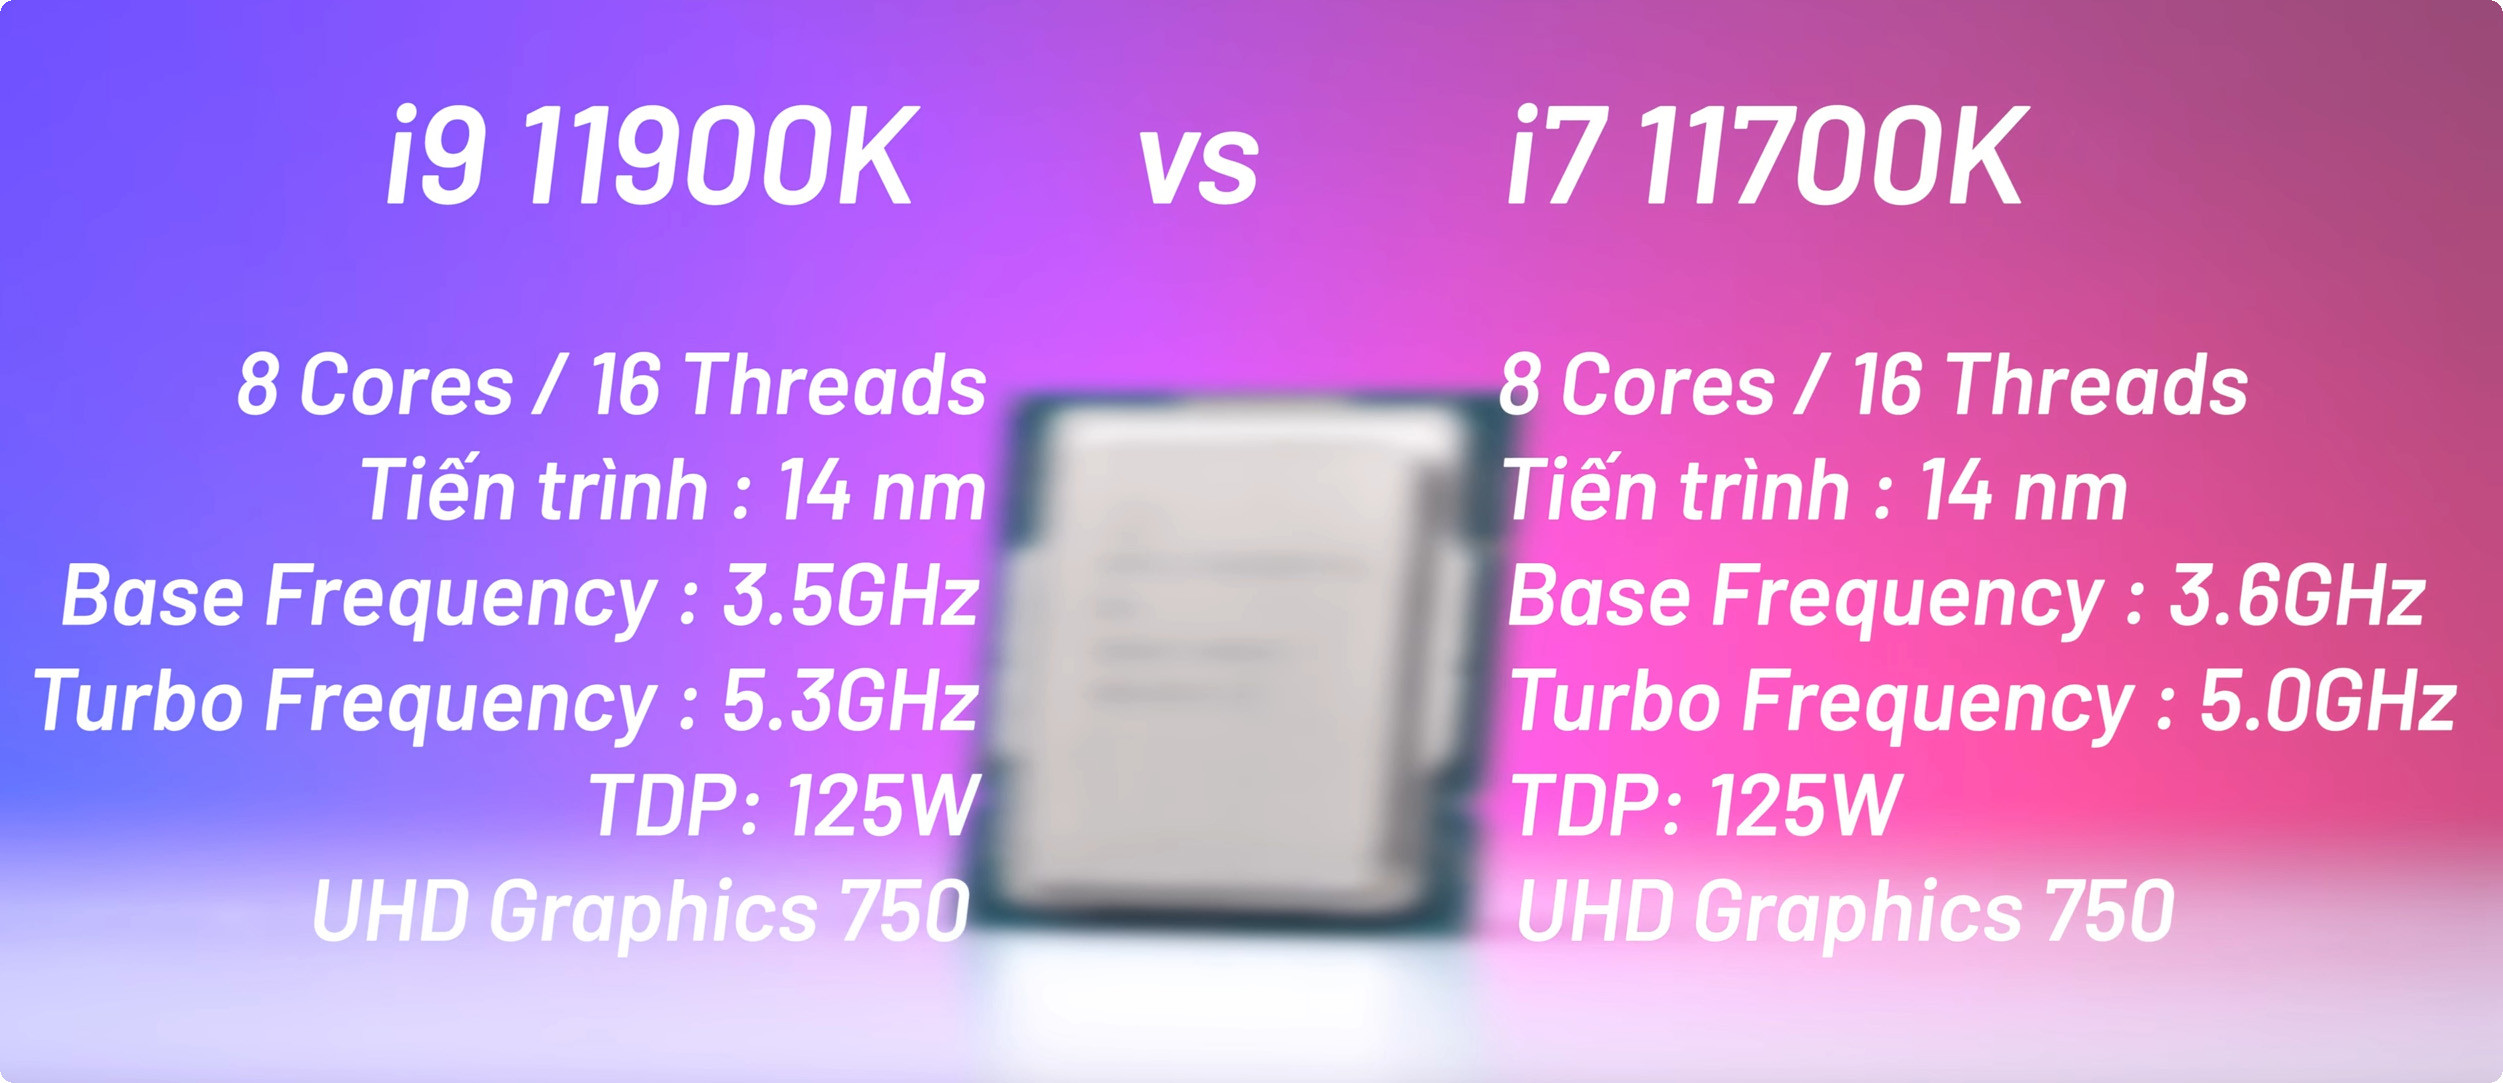 Core i7 11700k vs i9 11900k ➡️So sánh hiệu năng từ A - Z